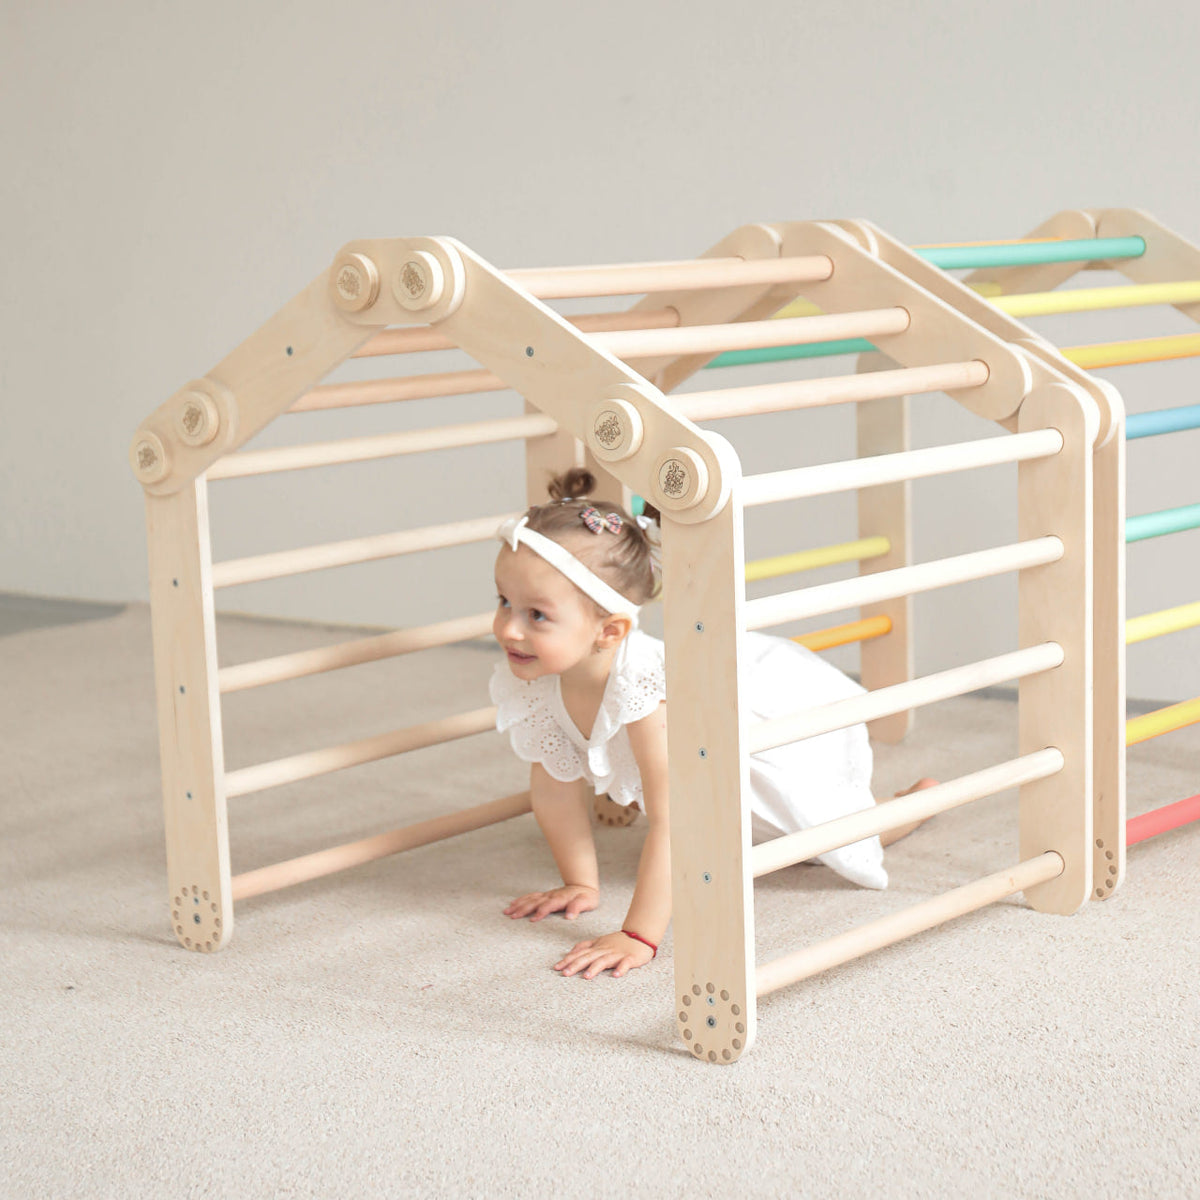 Flexi climbing frame for children (Set S) coating-free